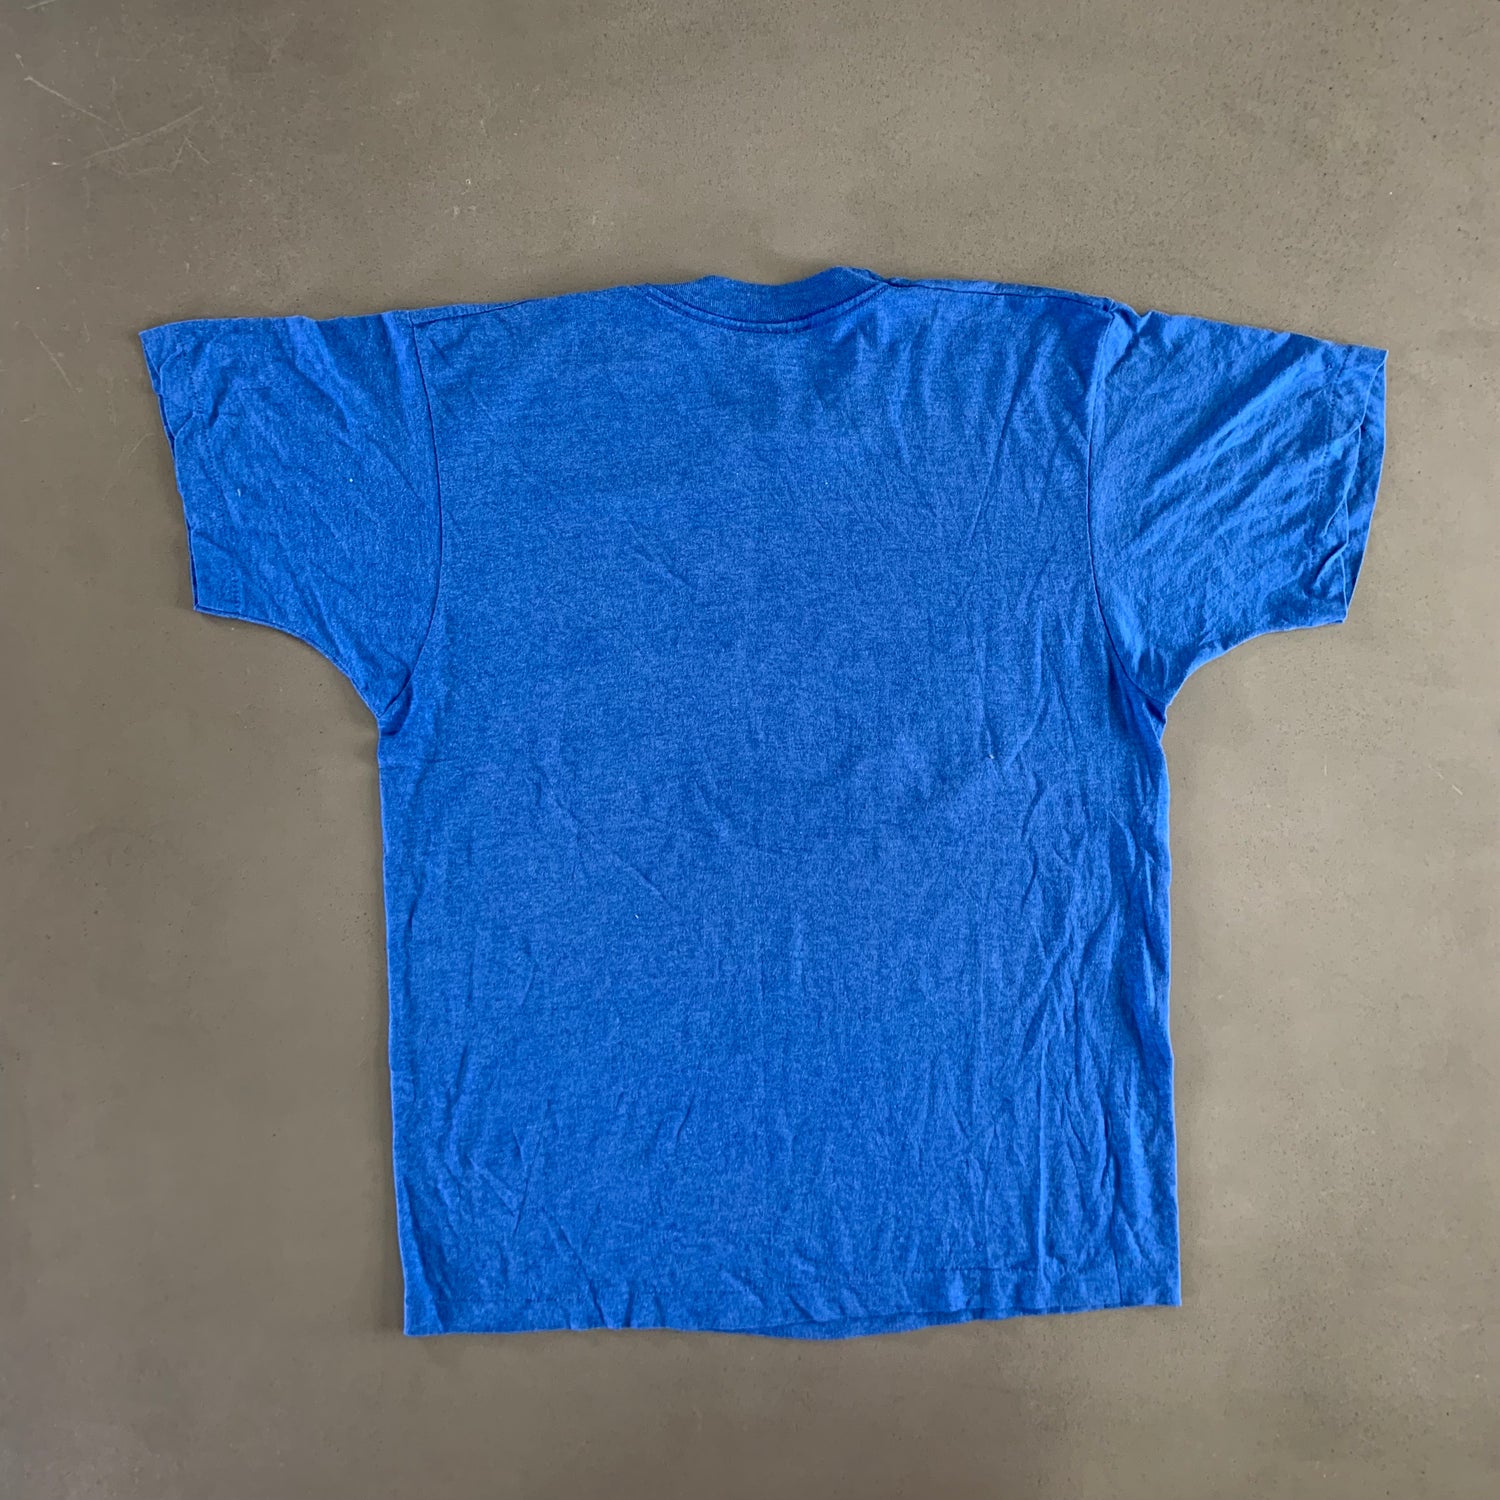 Vintage 1985 Colorado T-shirt size Large